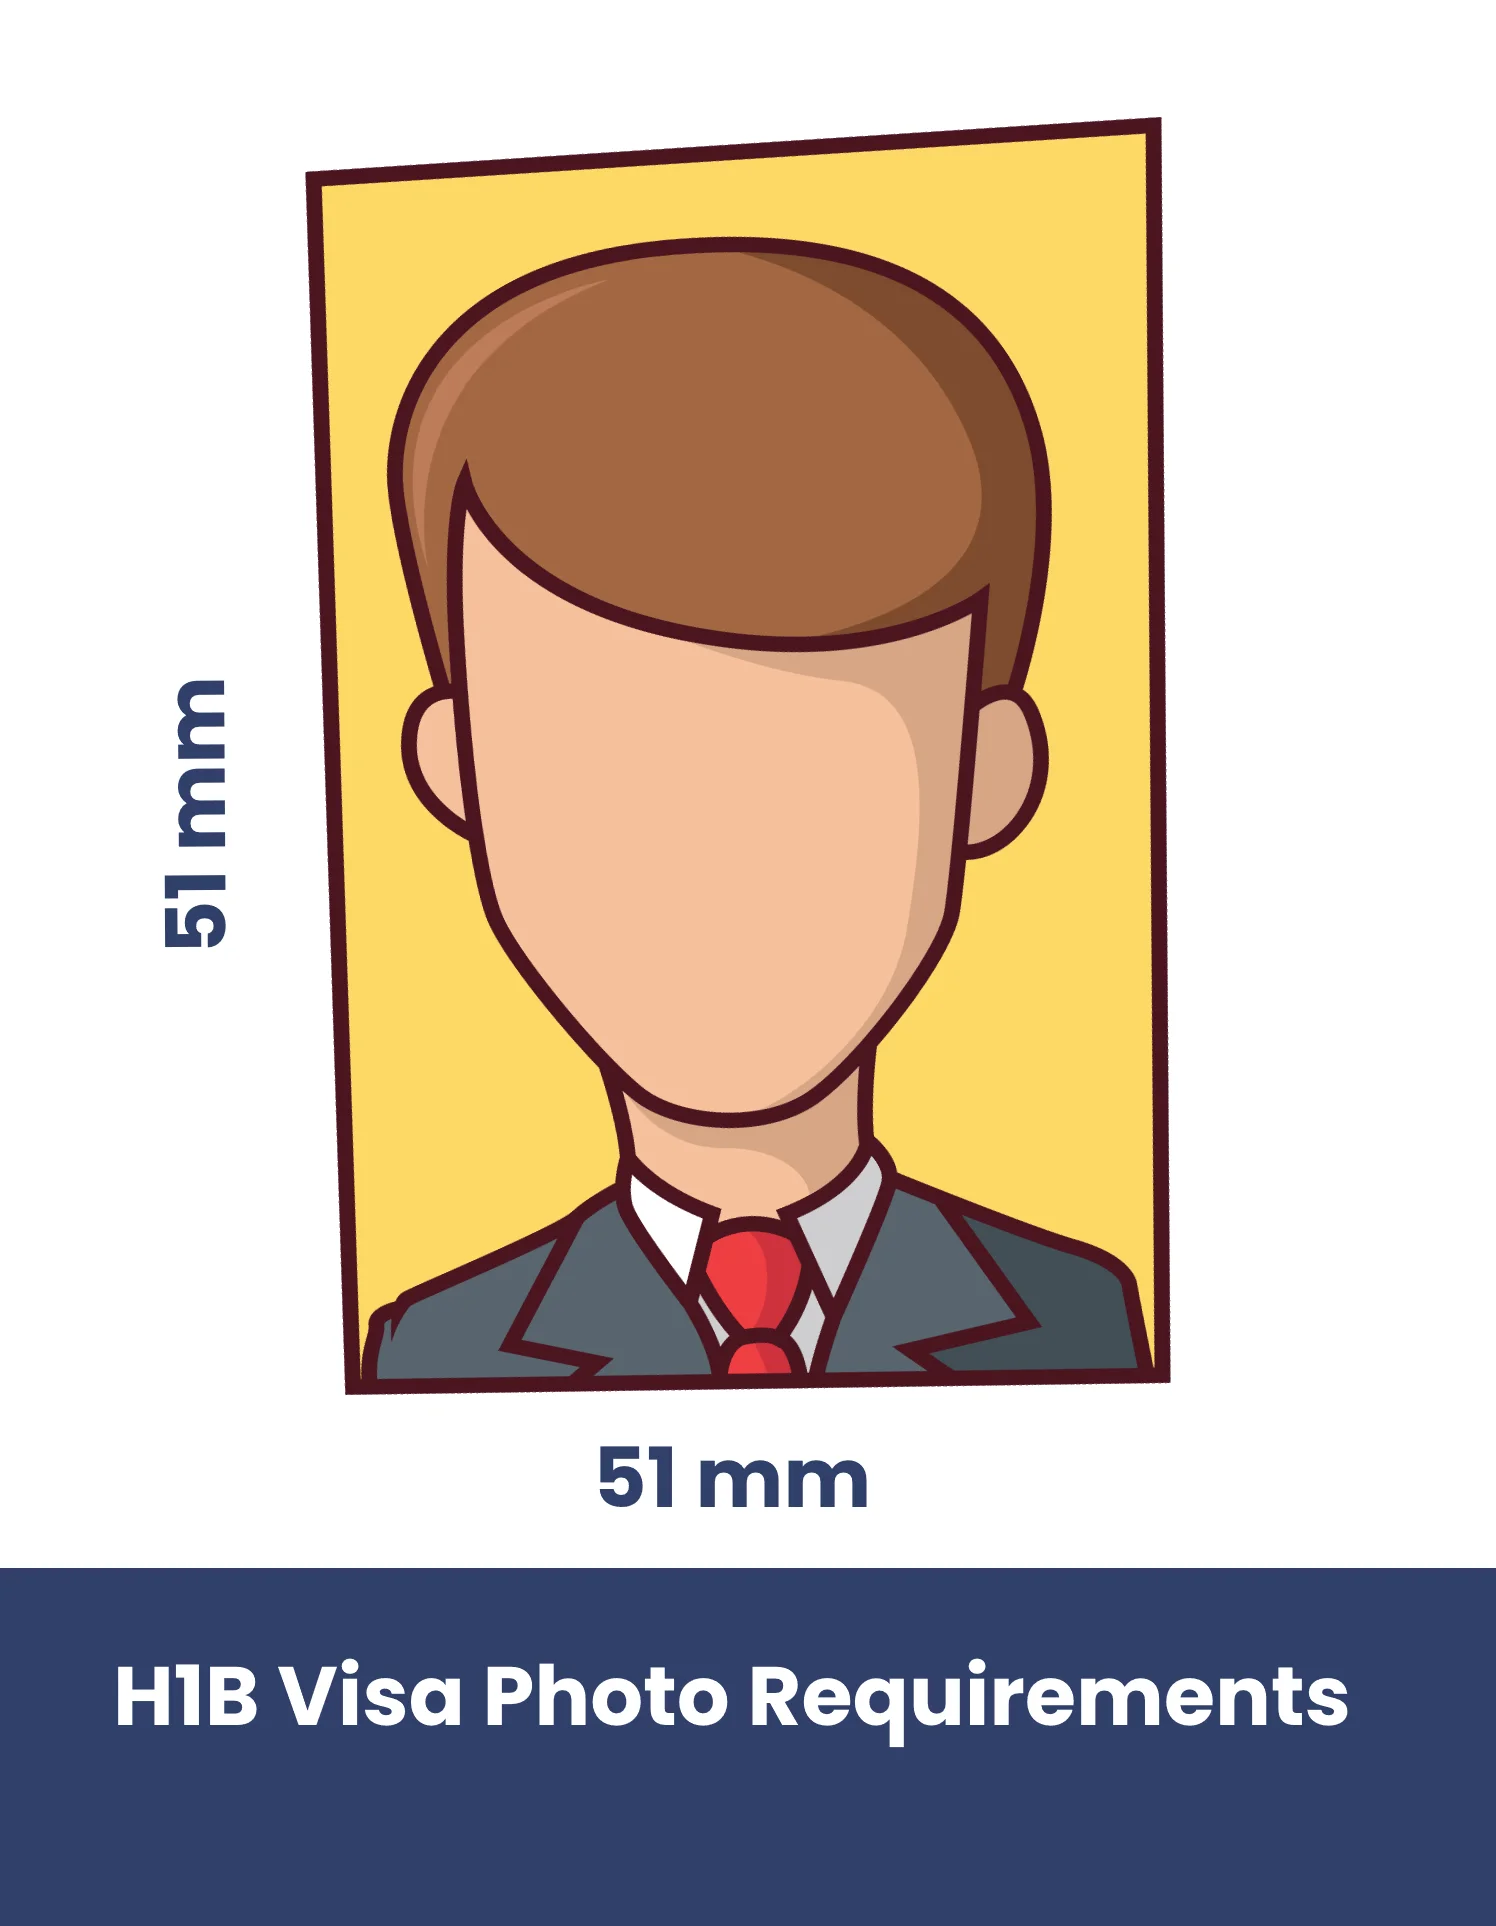 H1B Visa Photo Requirements